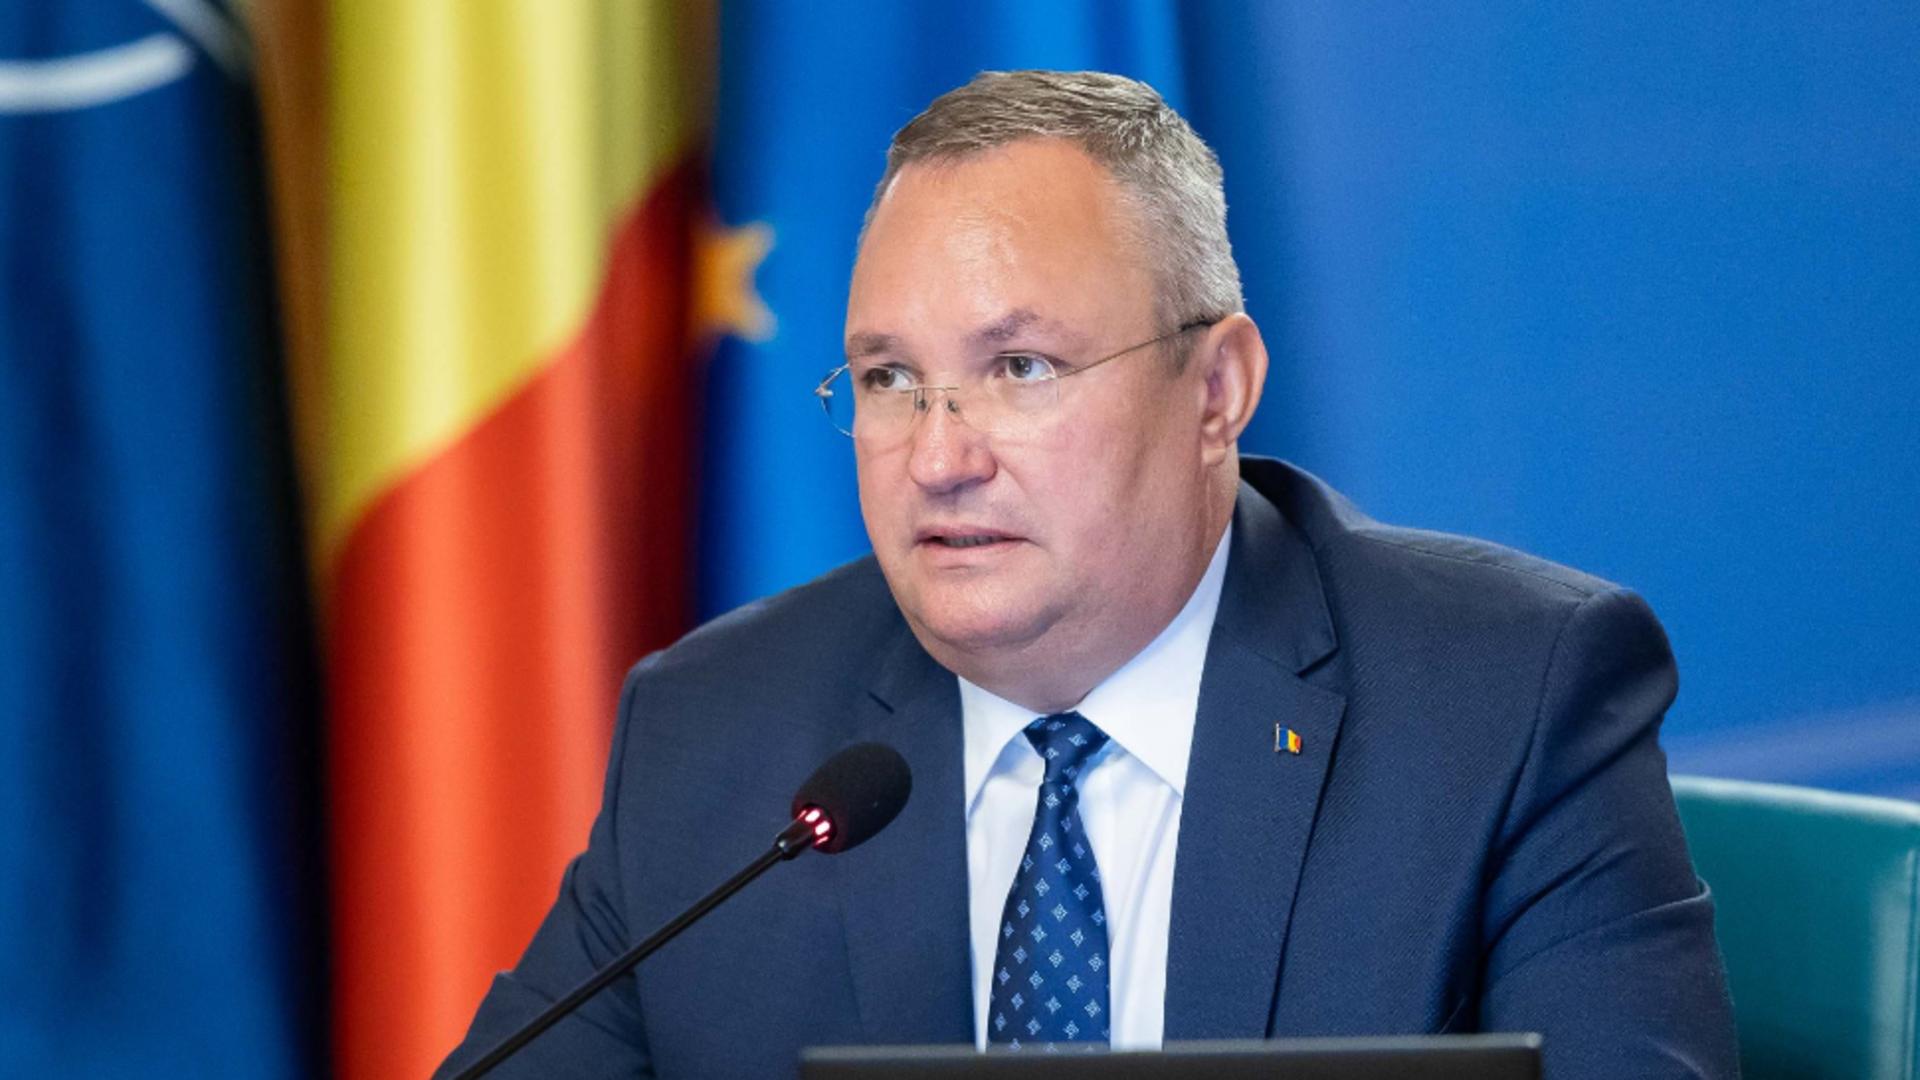 Nicolae Ciucă - premierul României